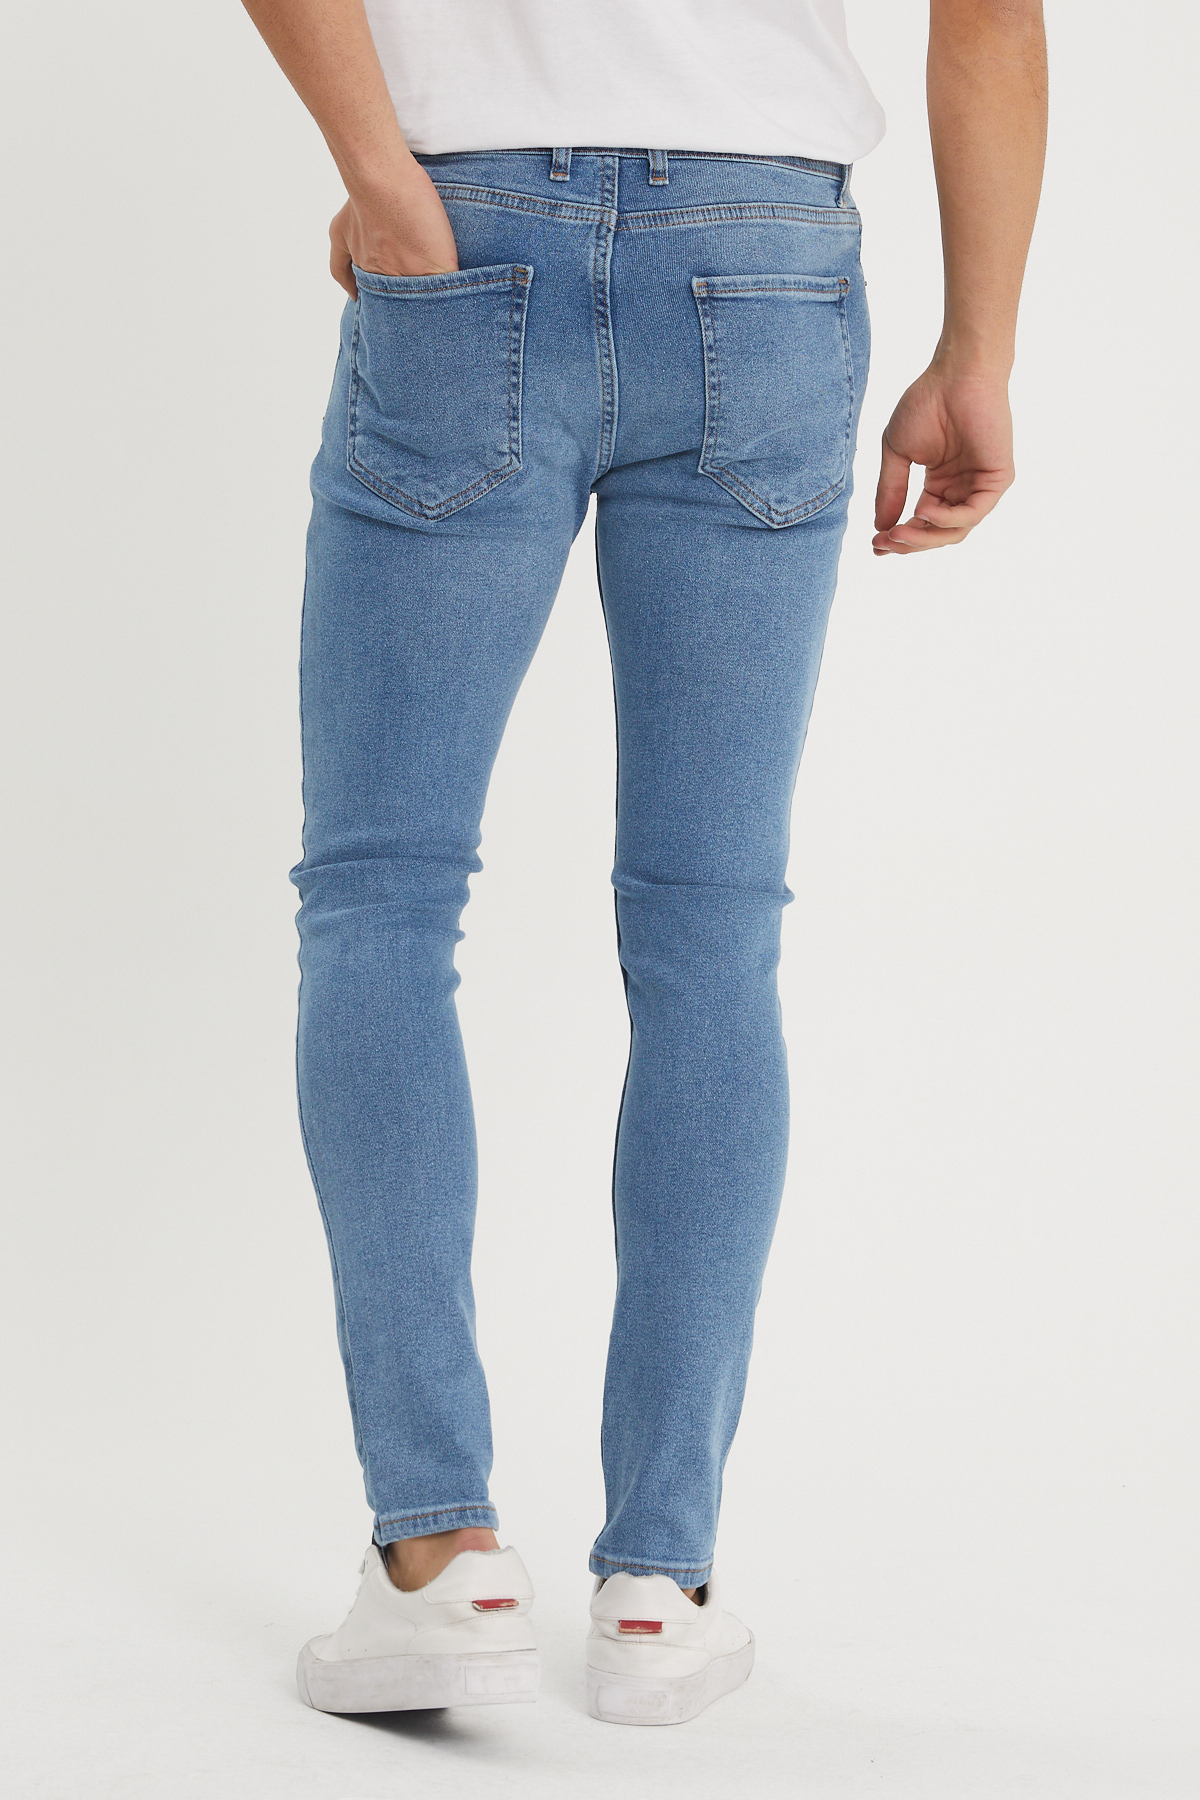 Mavi Slim Fit Jean Pantolon 1KXE5-44351-12 - 3